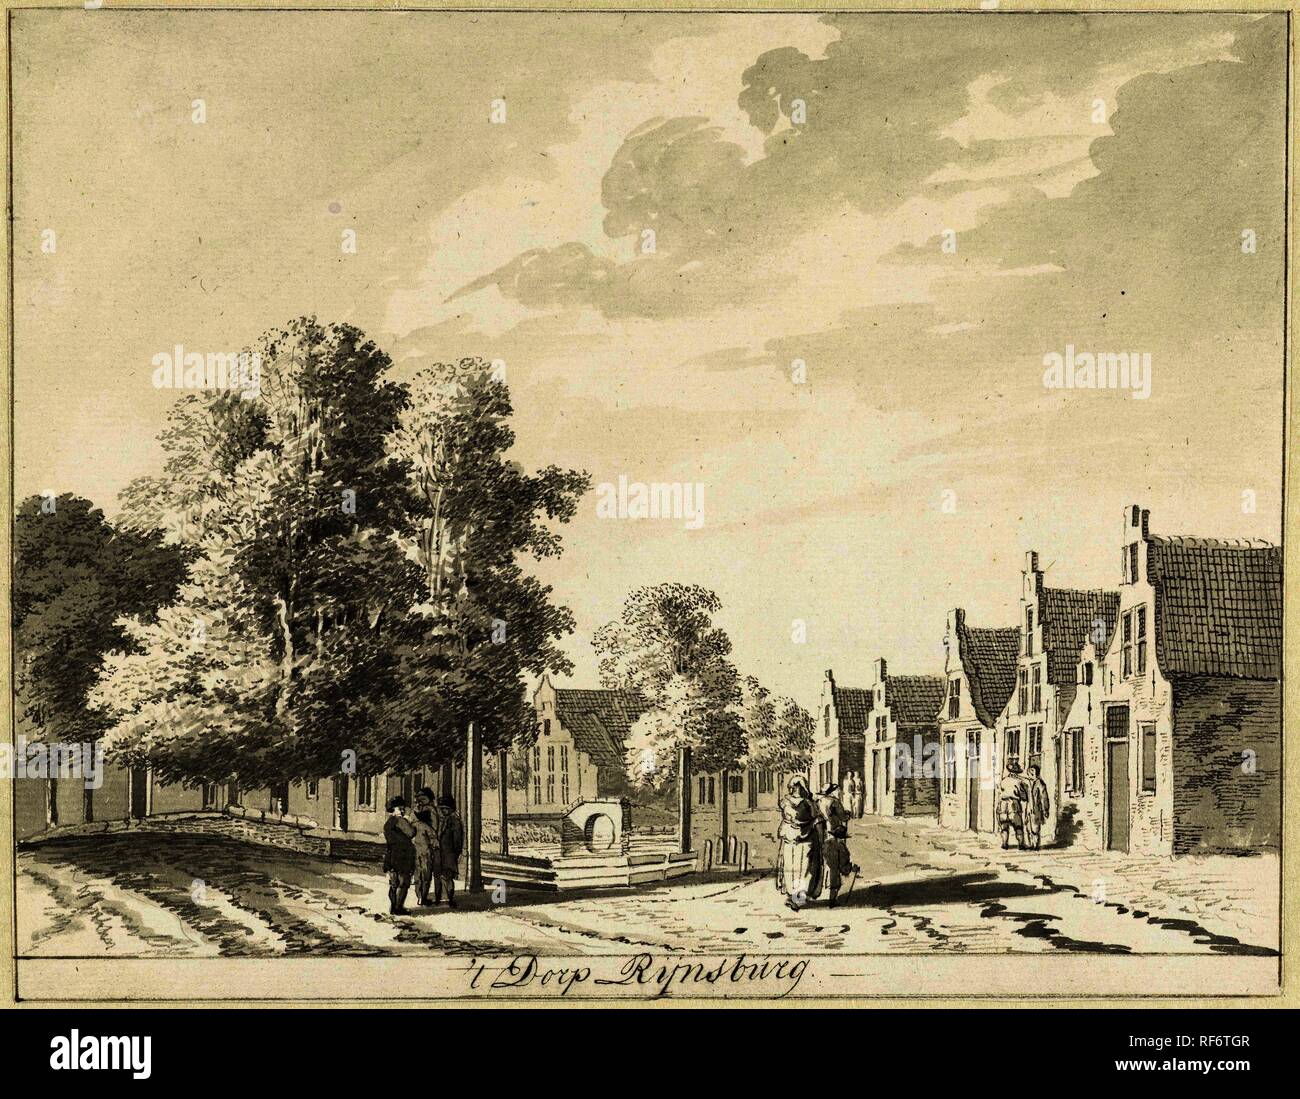 Le village Rijnsburg. Rapporteur pour avis : Hendrik Tavenier. Dating : 1775. Dimensions : H 183 mm × W 235 mm. Musée : Rijksmuseum, Amsterdam. Banque D'Images